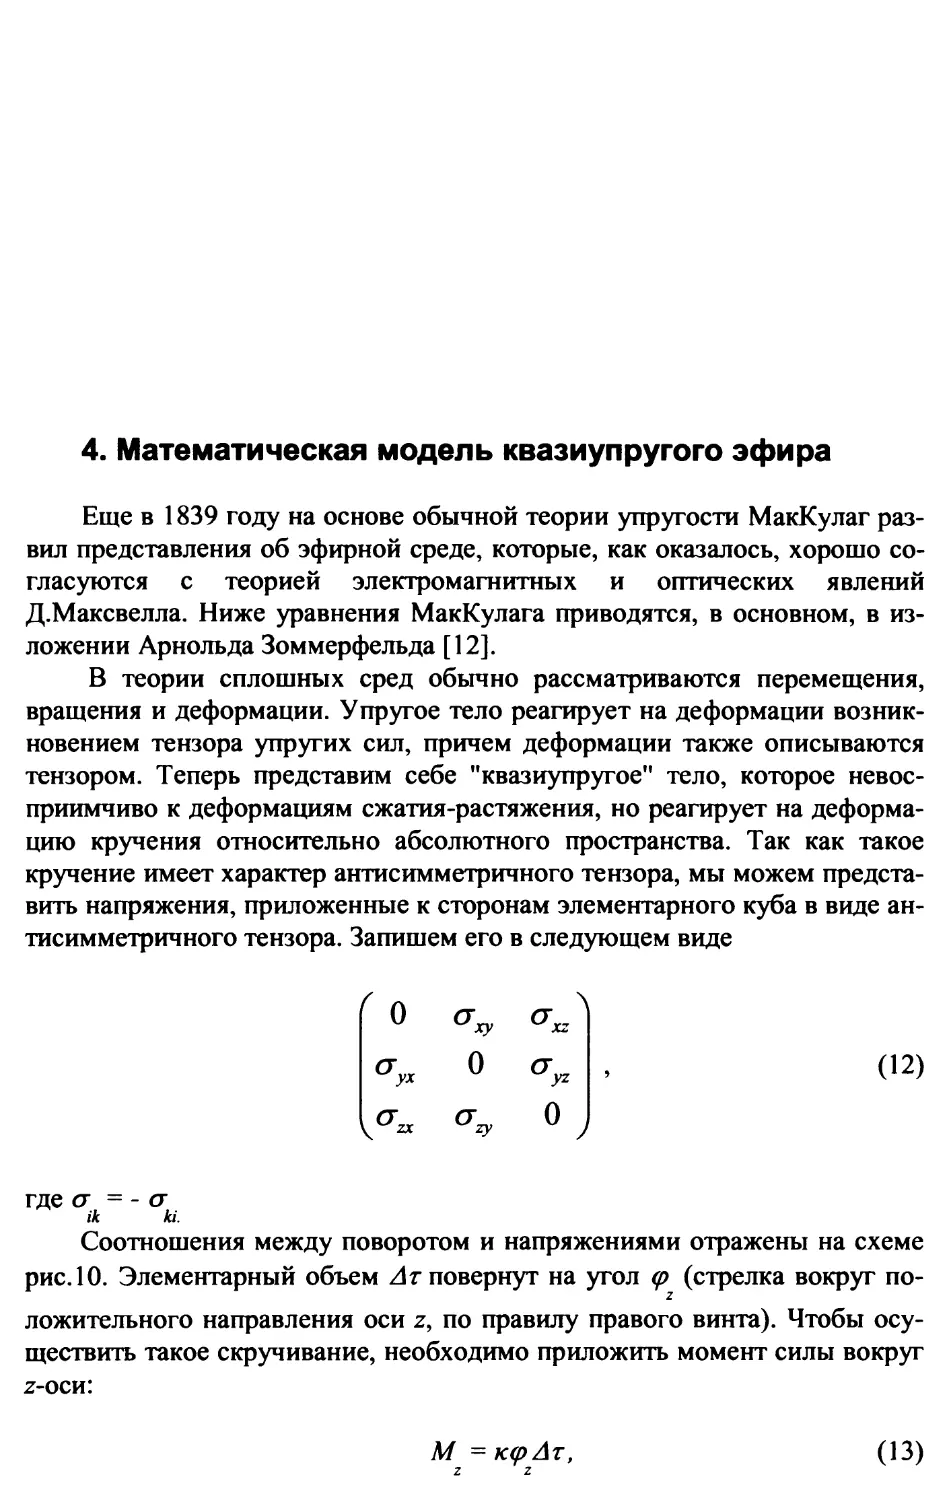 4. Математическая модель квазиупругого эфира